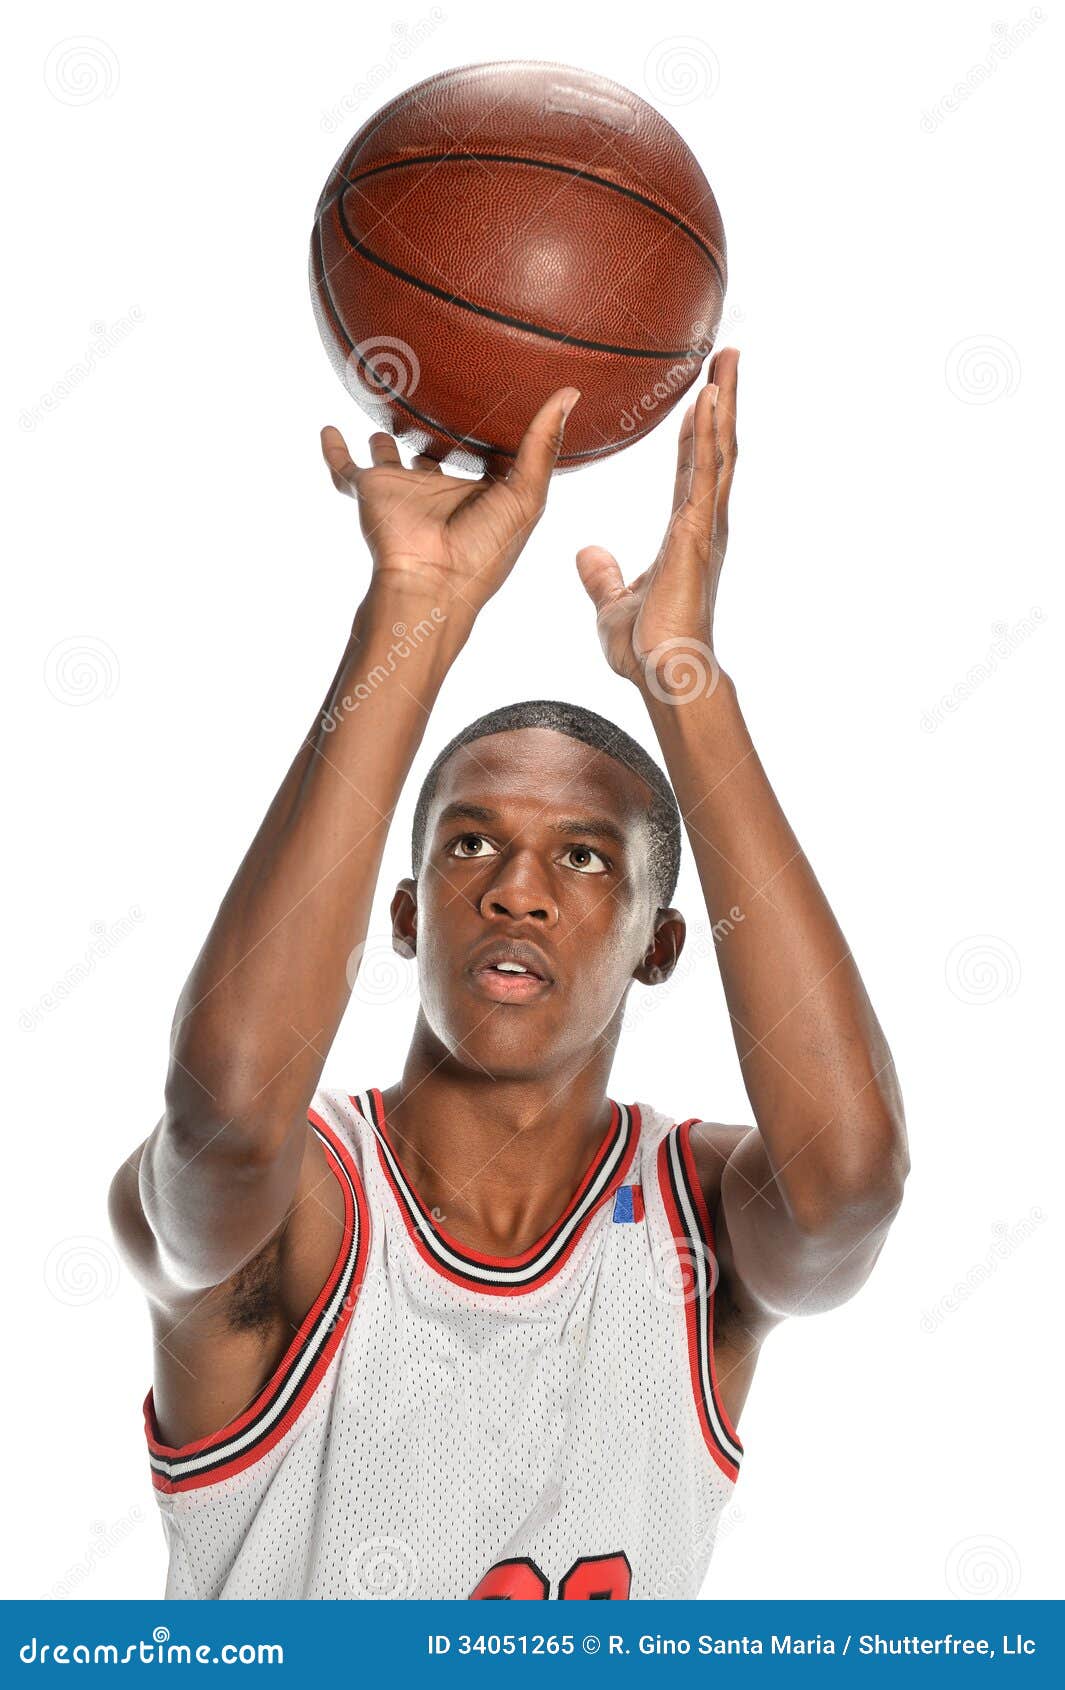 American basketball players